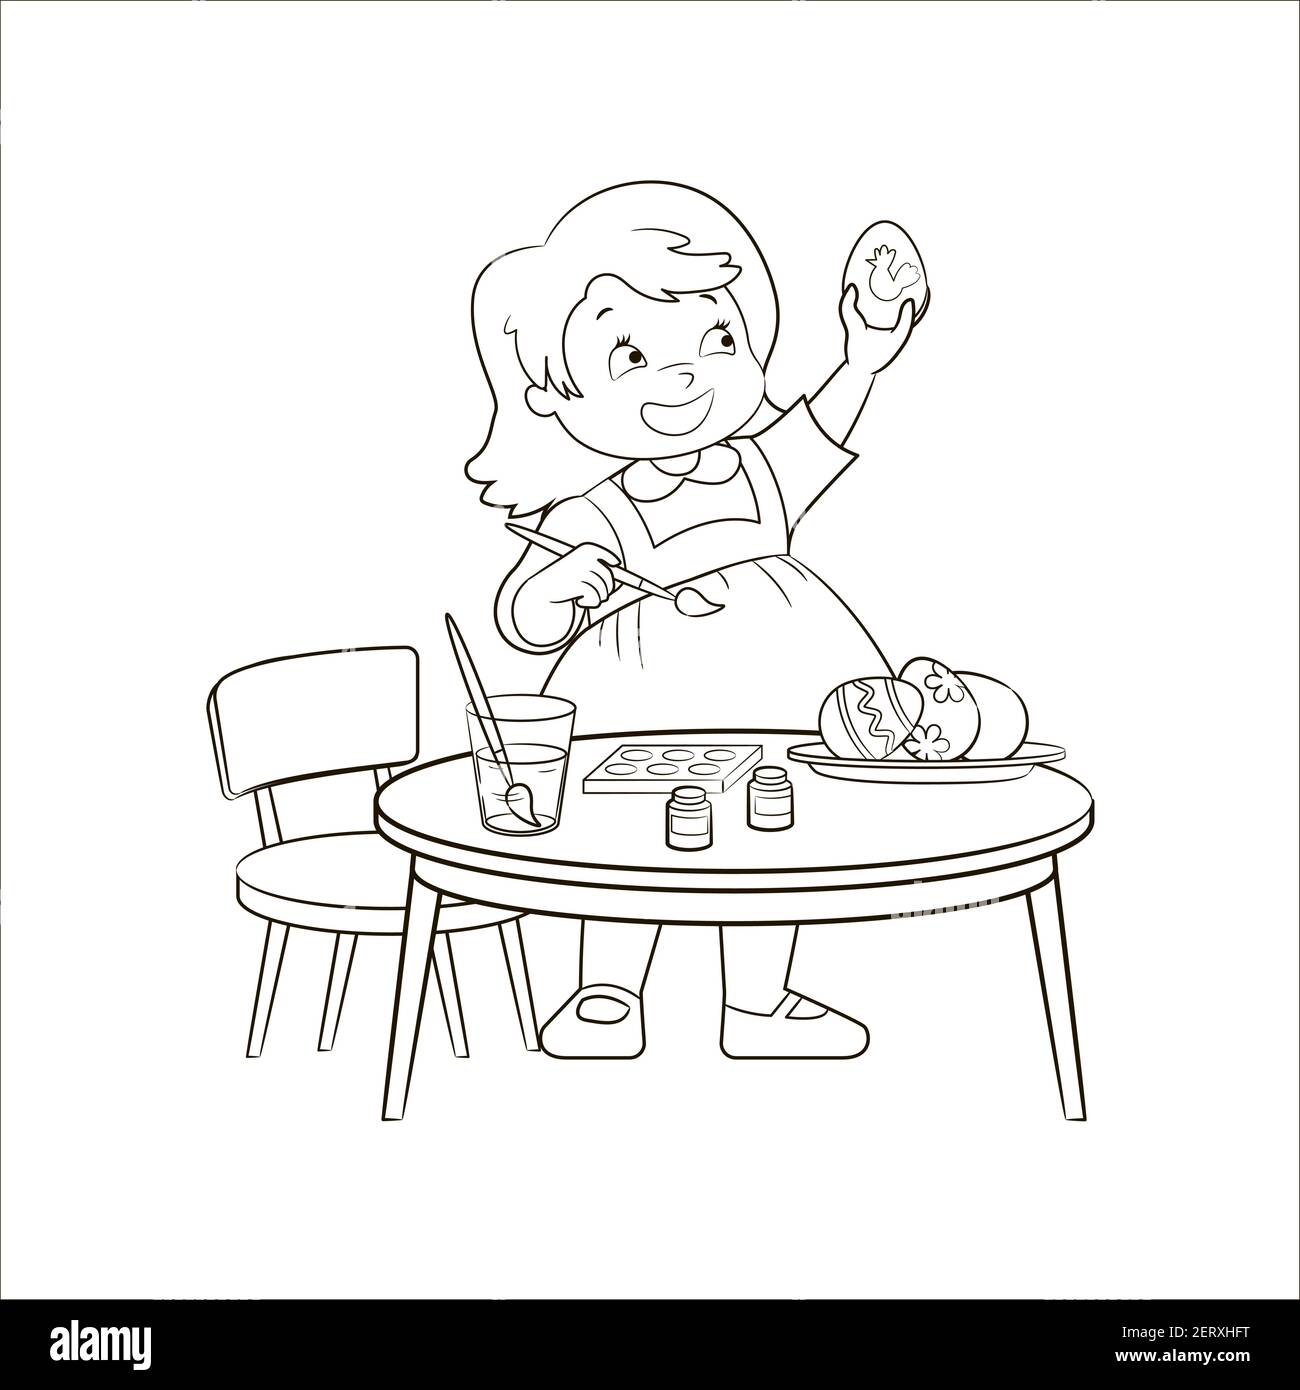 Bébé, fille avec plaisir tire des œufs de Pâques à une table ronde pour enfants. Livre de coloriage, illustration vectorielle, noir et blanc, croquis, dessin artistique pour enfants Illustration de Vecteur